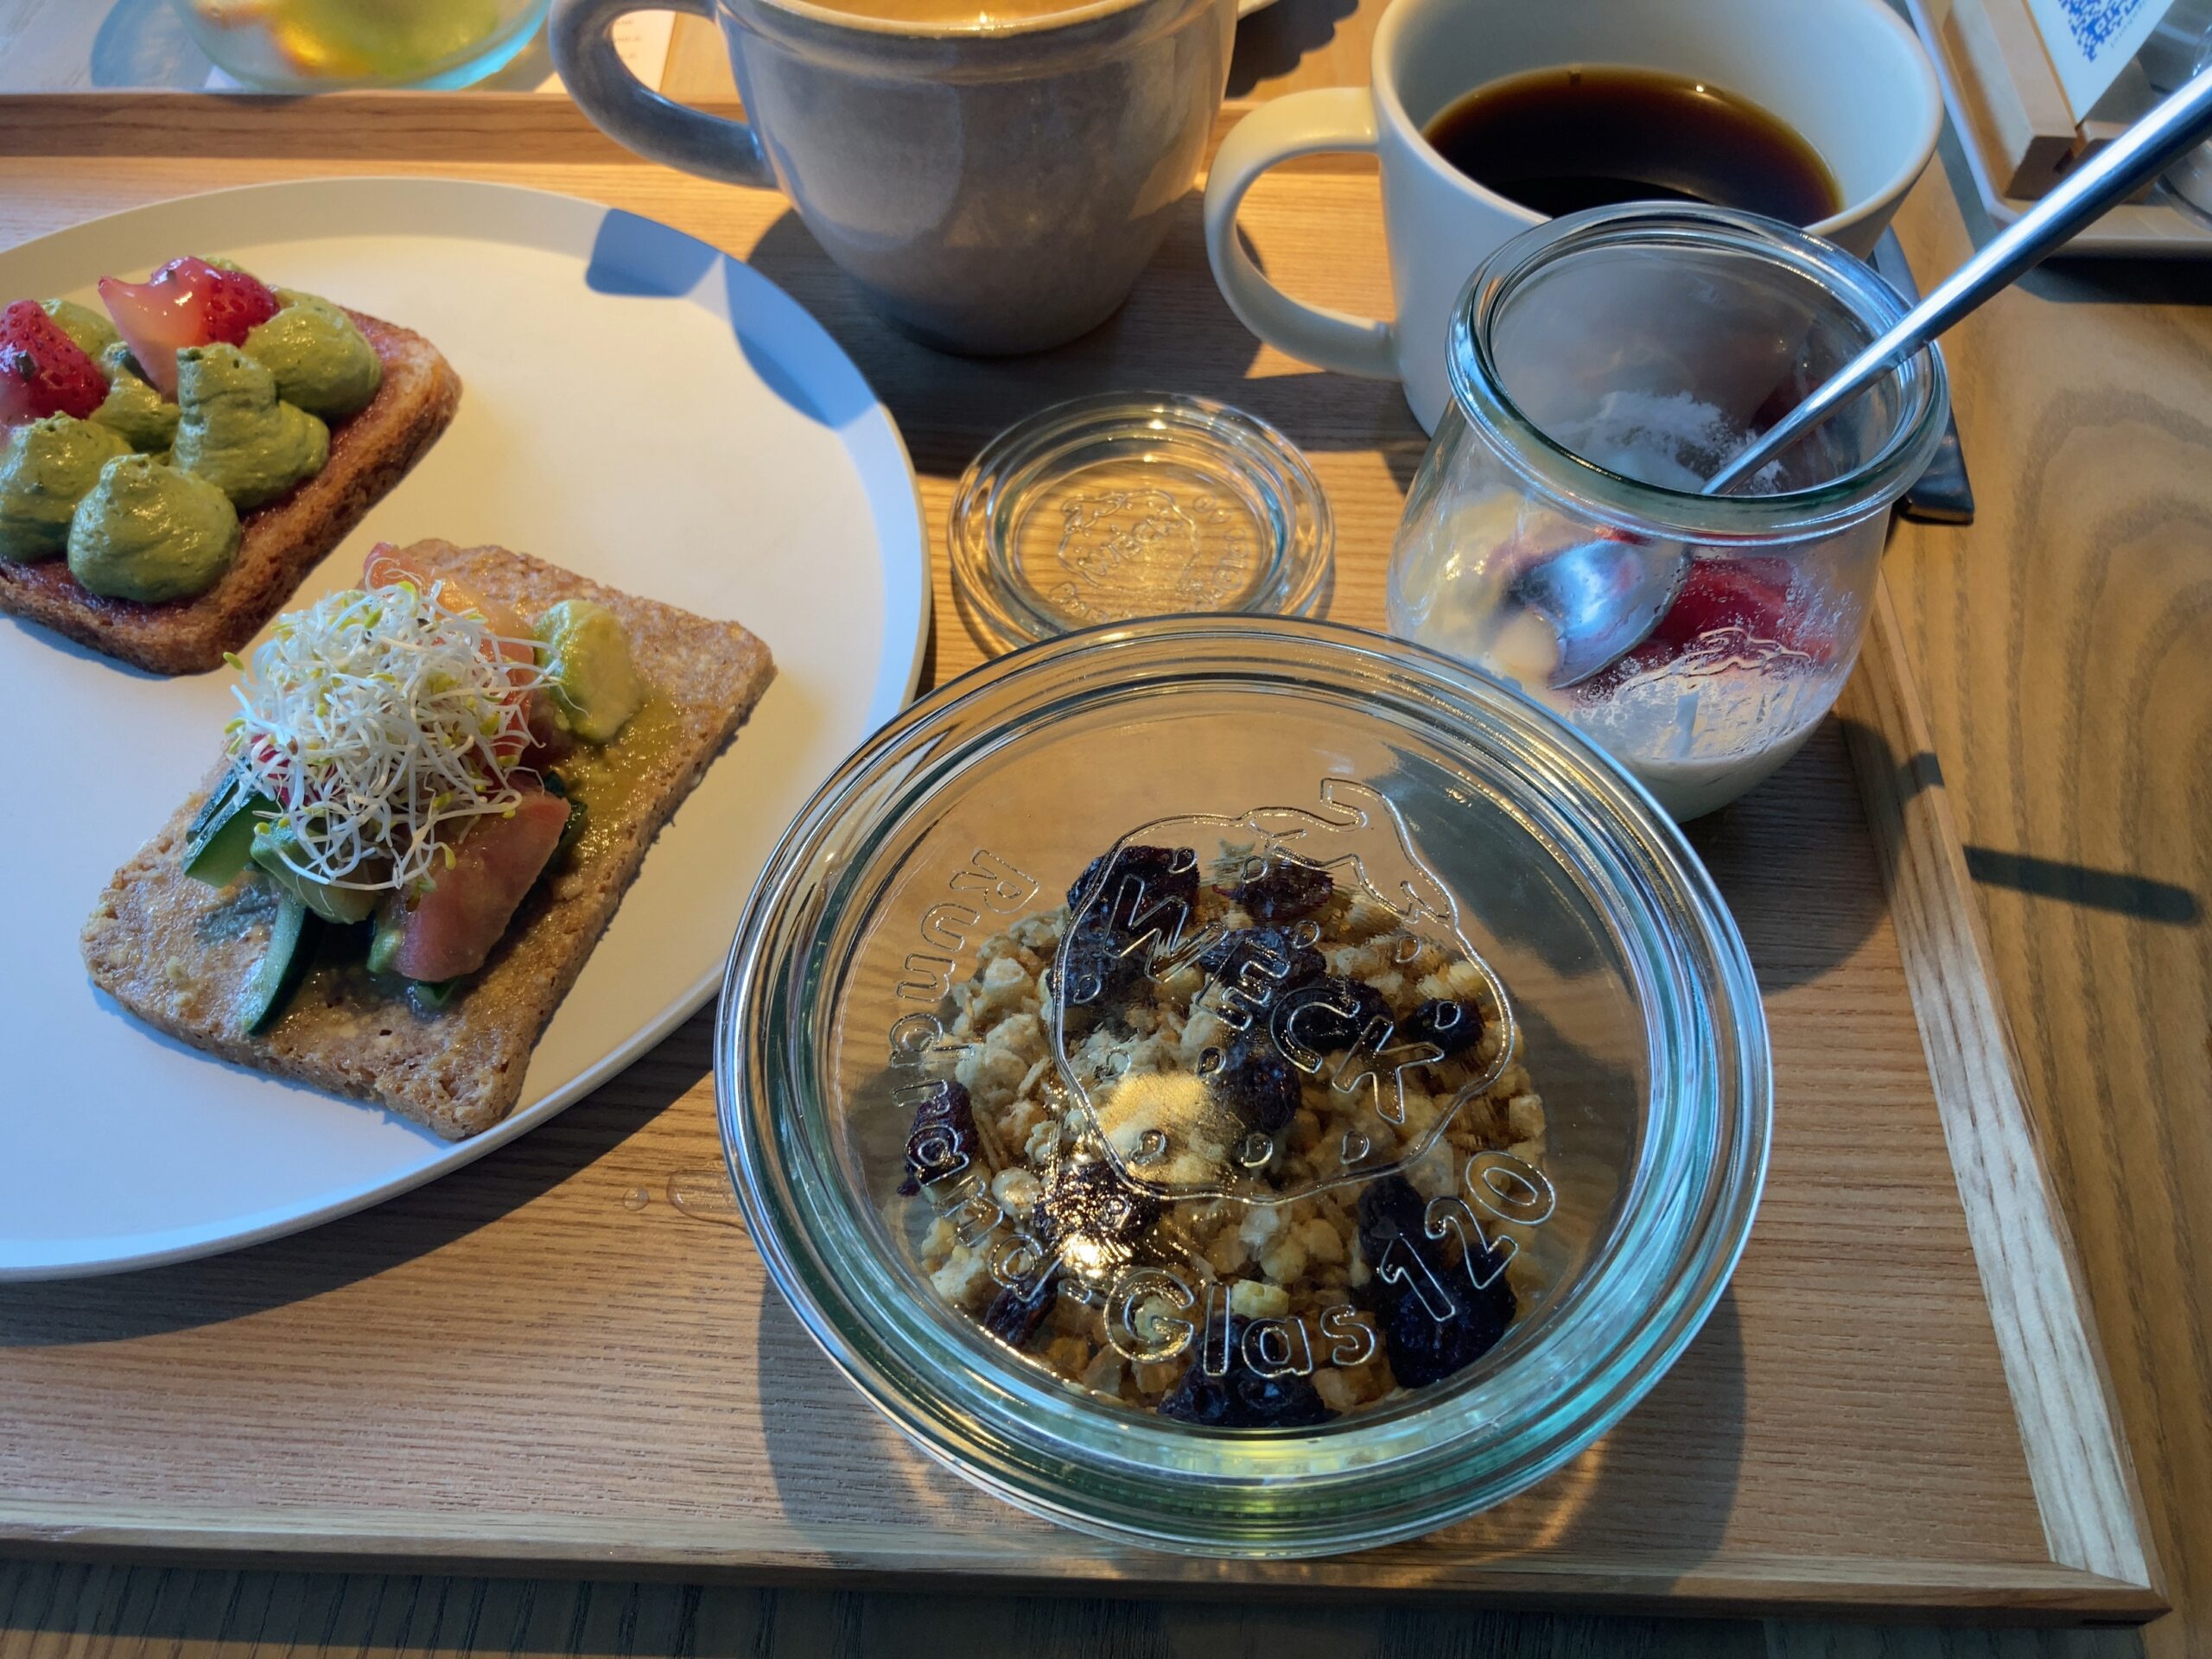 ザレインホテル京都の朝食の様子